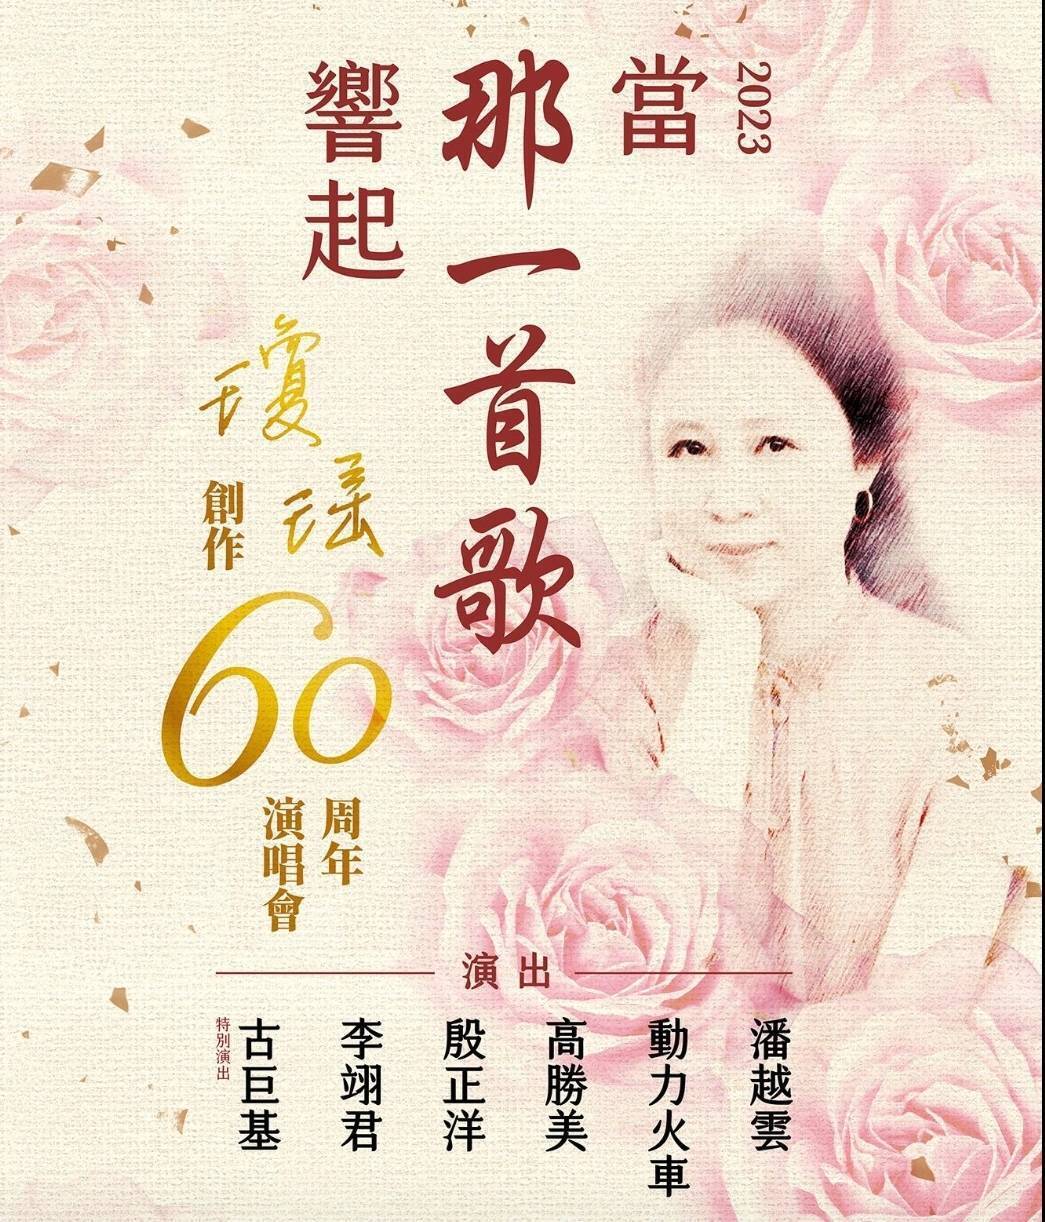 Năm nay đánh dấu 60 năm sự nghiệp sáng tác của nhà văn Quỳnh Dao, buổi hòa nhạc kỷ niệm 60 năm sự nghiệp sáng tác của Quỳnh Dao “Khi giai điệu đó cất lên” 2023 được tổ chức tại sân vận động Taipei Arena vào ngày 19/8, với sự góp mặt của 6 ca sĩ(ảnh: KHAM Ticket cung cấp)